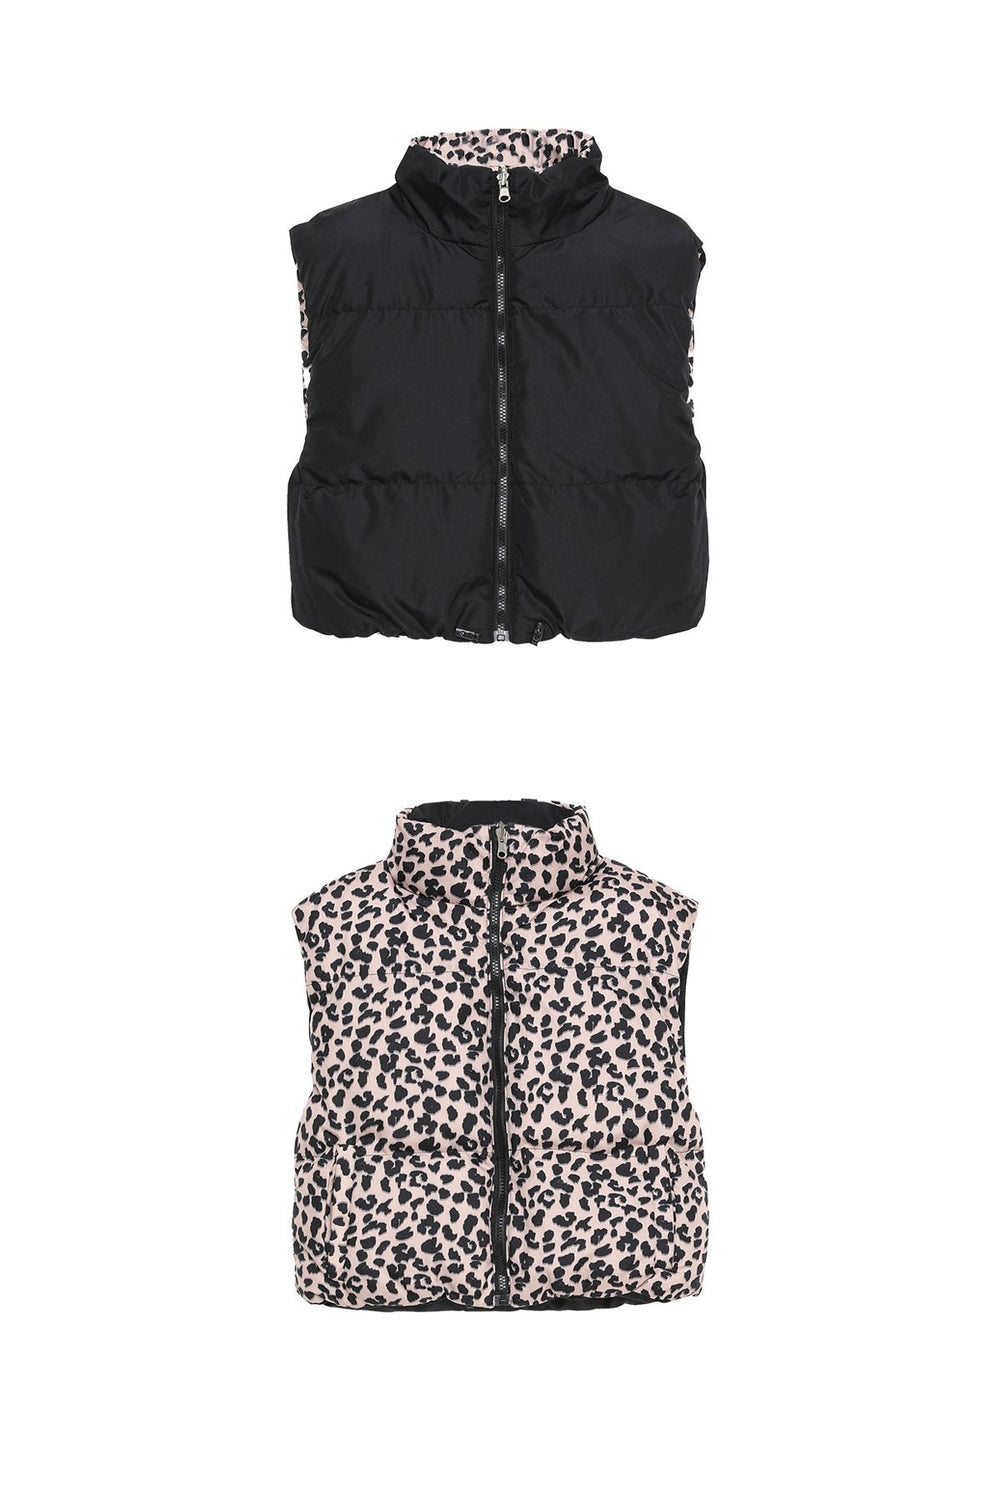 Leopard Patterned Short Puffer Vest Brown